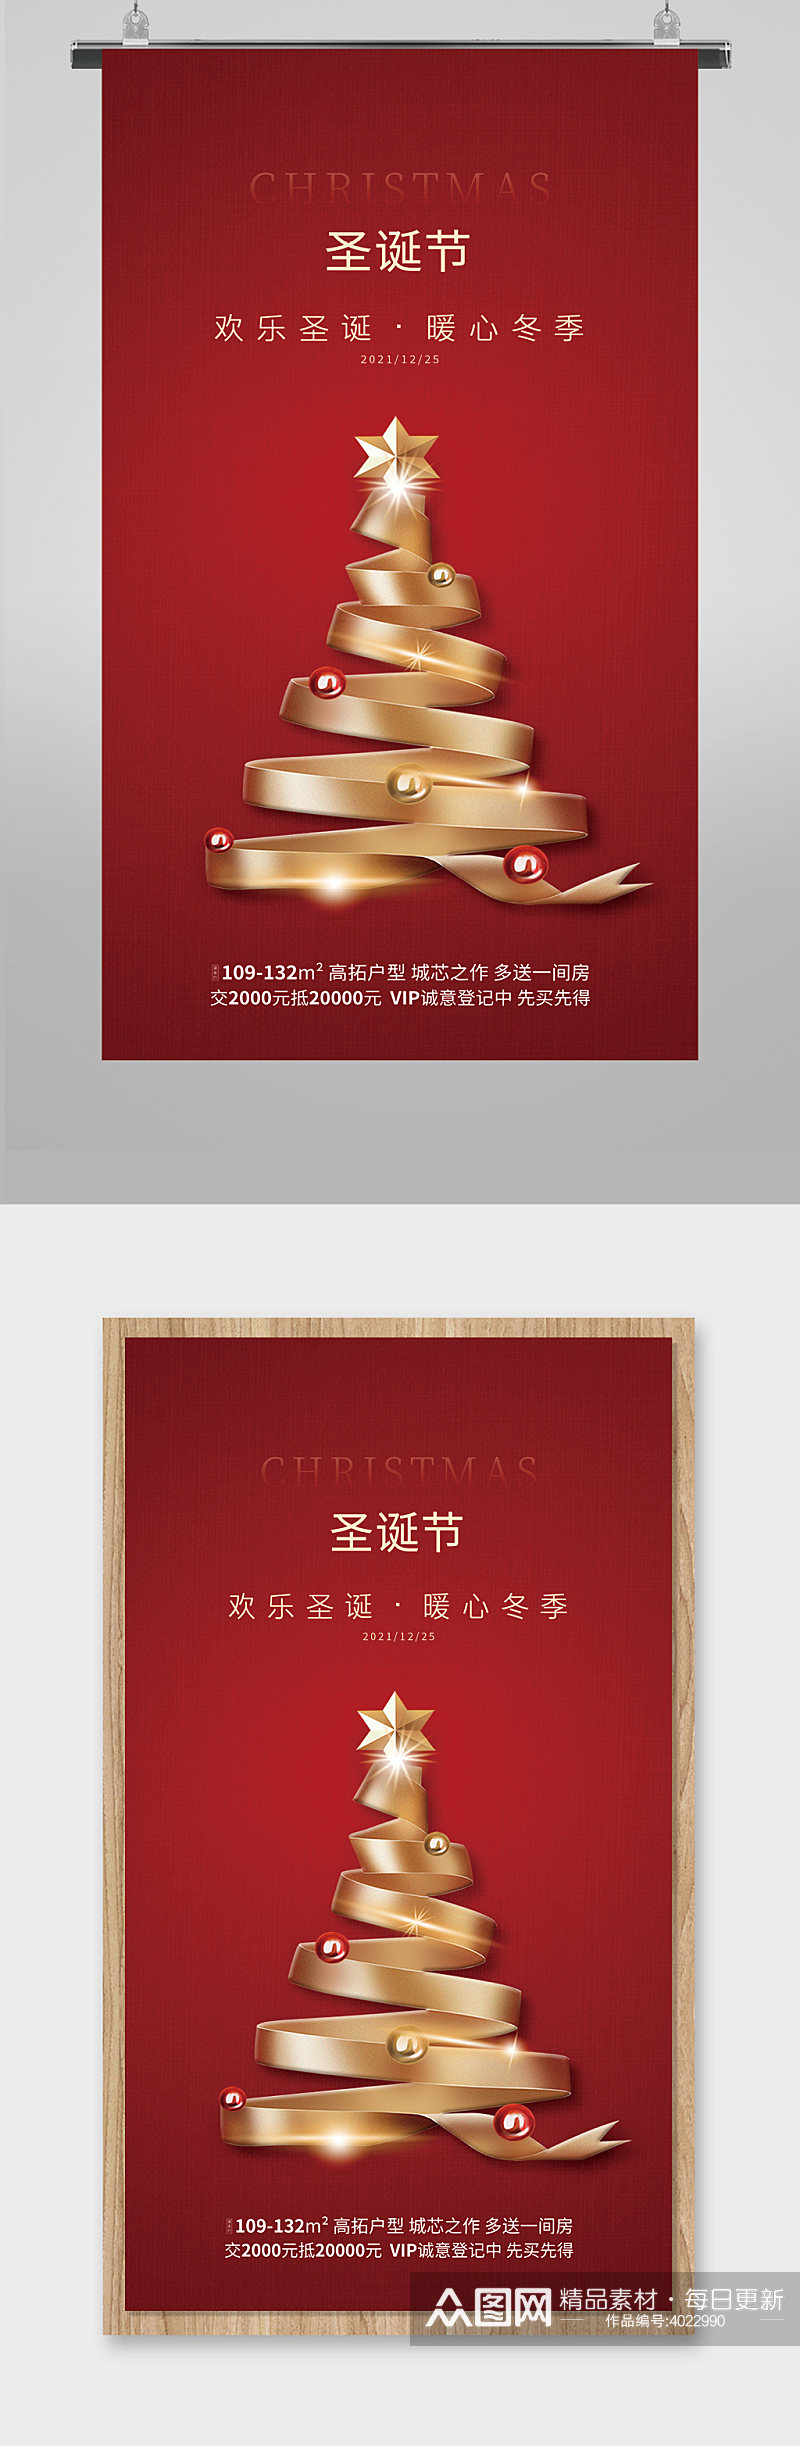 红色圣诞节海报设计素材